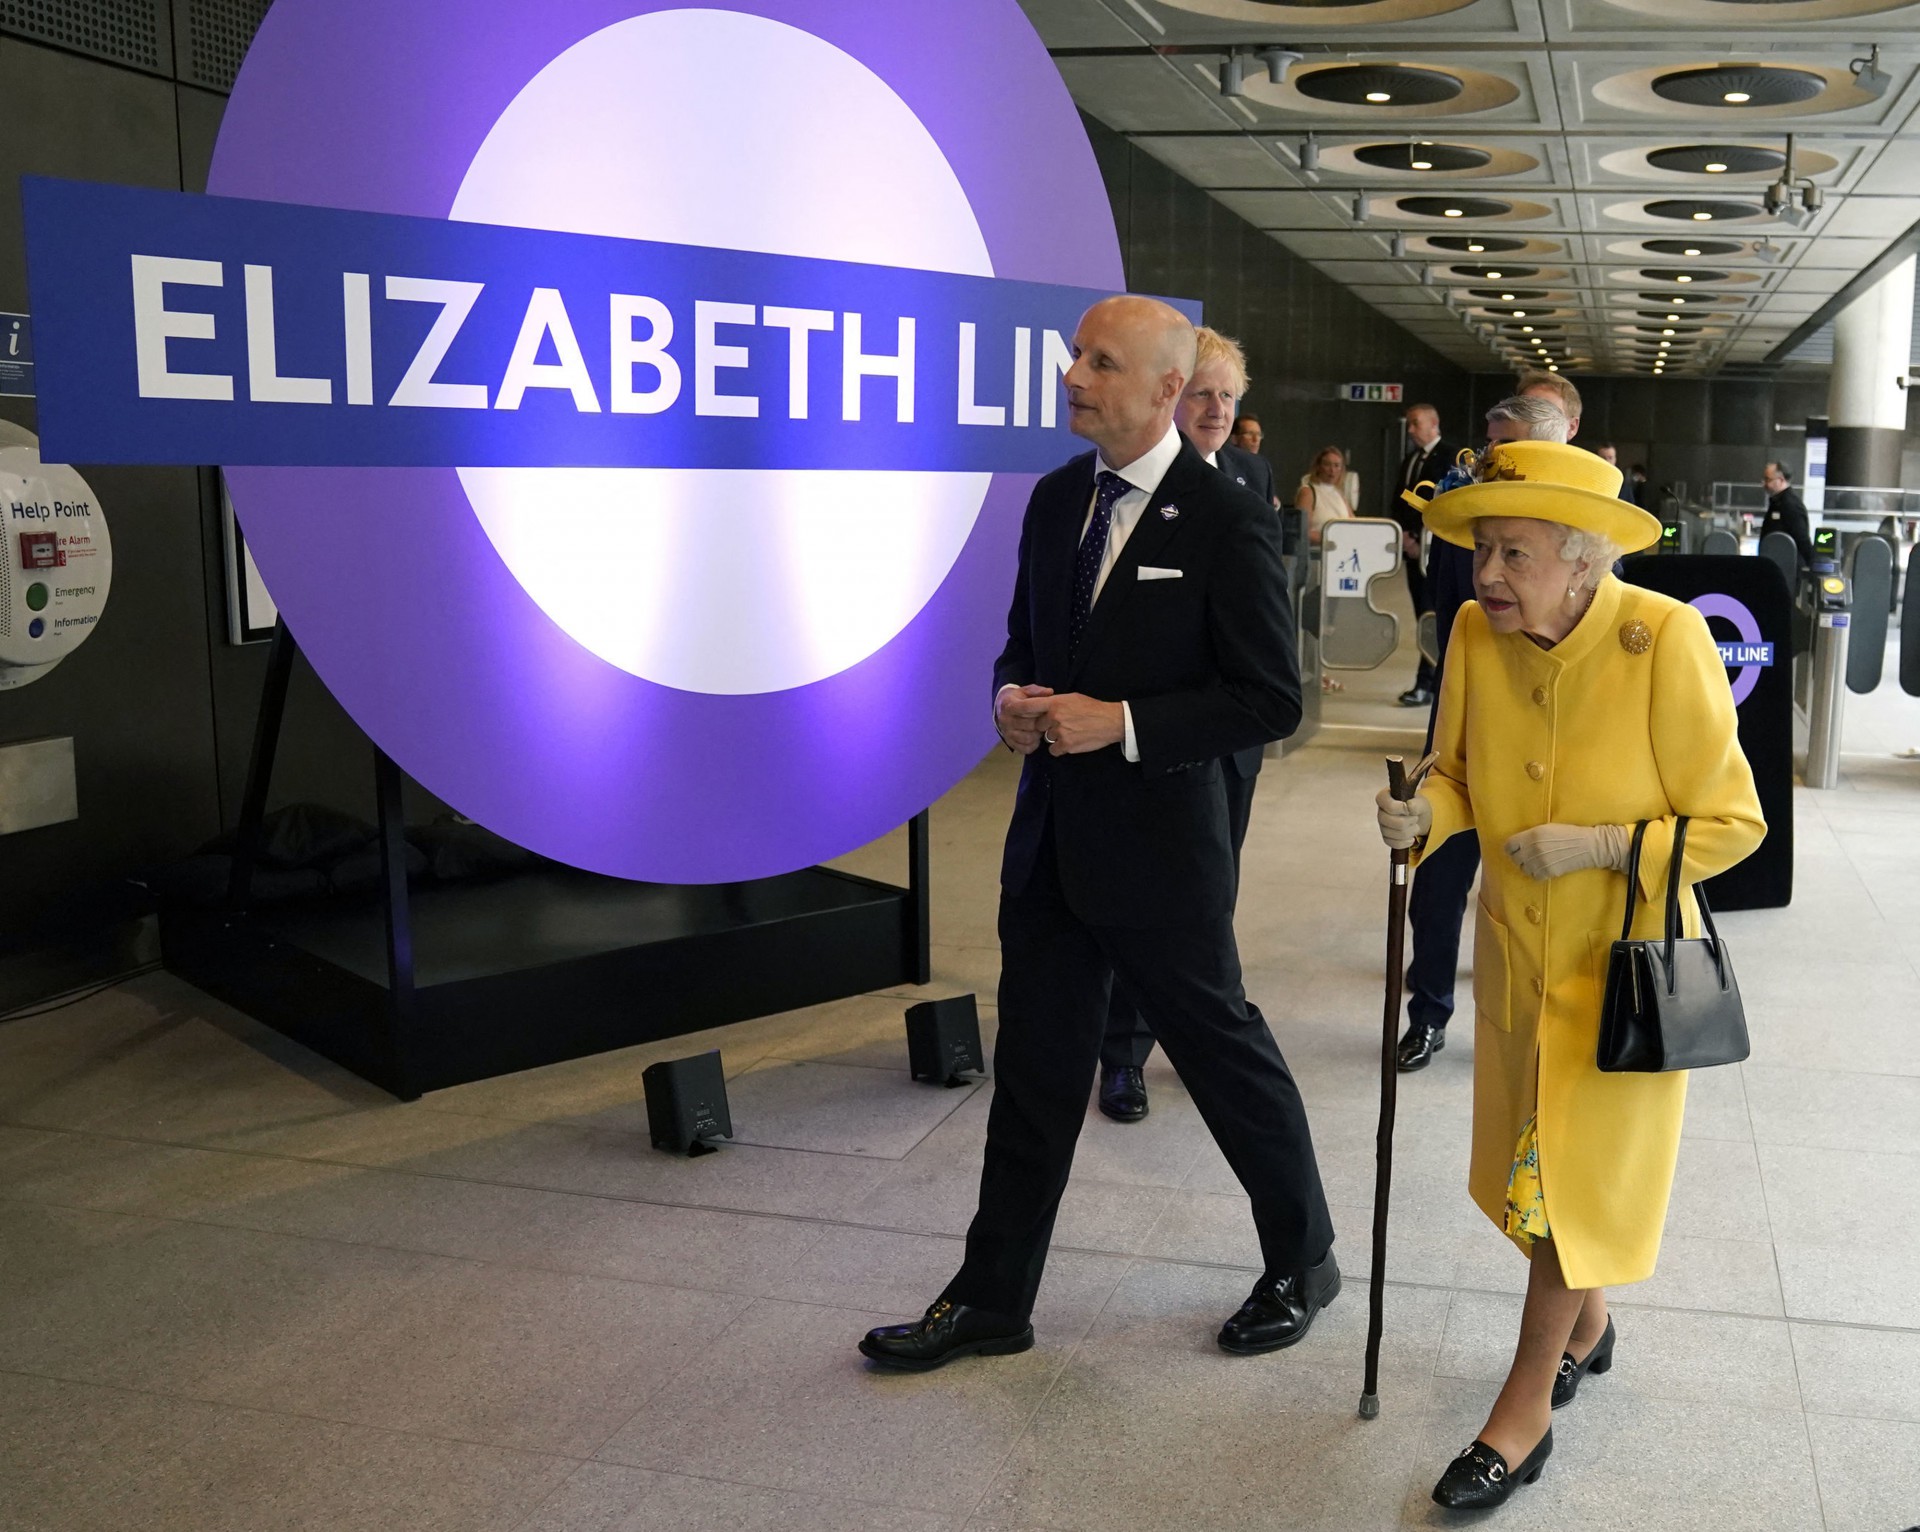 A rainha Elizabeth II da Grã-Bretanha (R) visita a estação Paddington em Londres em 17 de maio de 2022, para marcar a conclusão do projeto Crossrail de Londres, antes da abertura do novo serviço ferroviário 'Elizabeth Line' na próxima semana (Foto: Andrew Matthews / POOL / AFP)